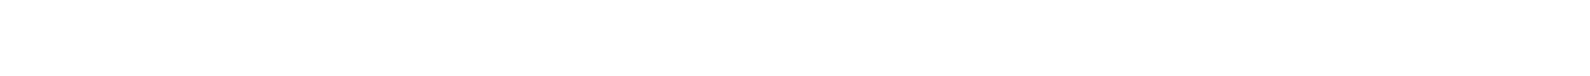 General Dynamics logo large for dark backgrounds (transparent PNG)